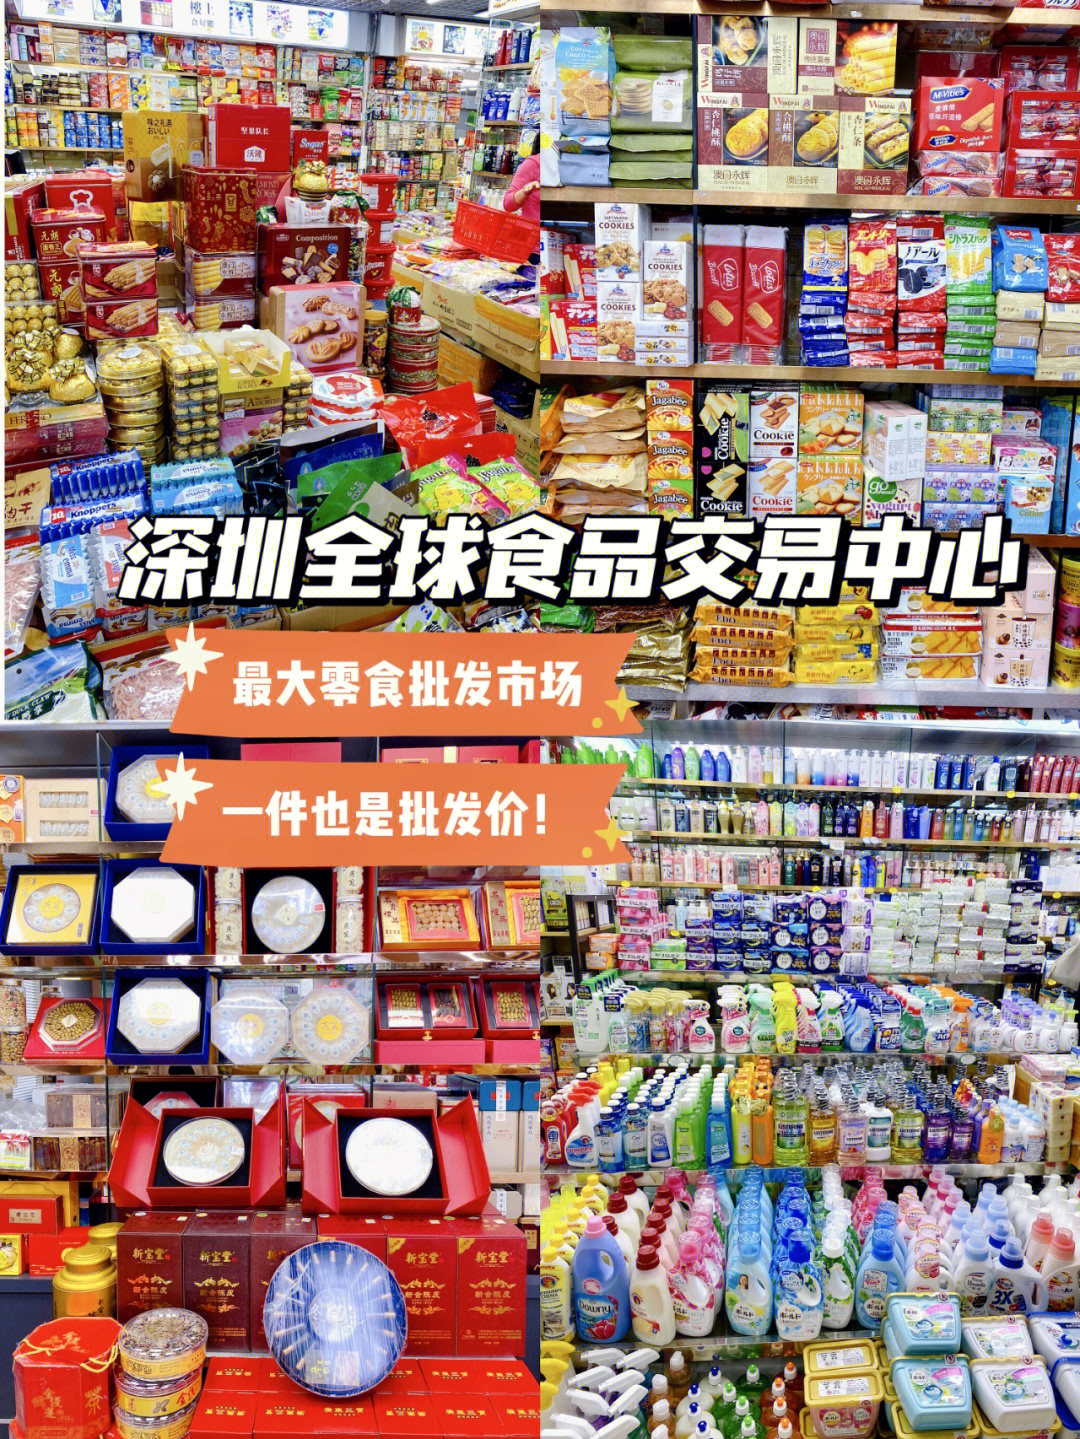 竟然还有这么一个秘密基地:紫荆城全球食品交易中心,全球进口零食批发